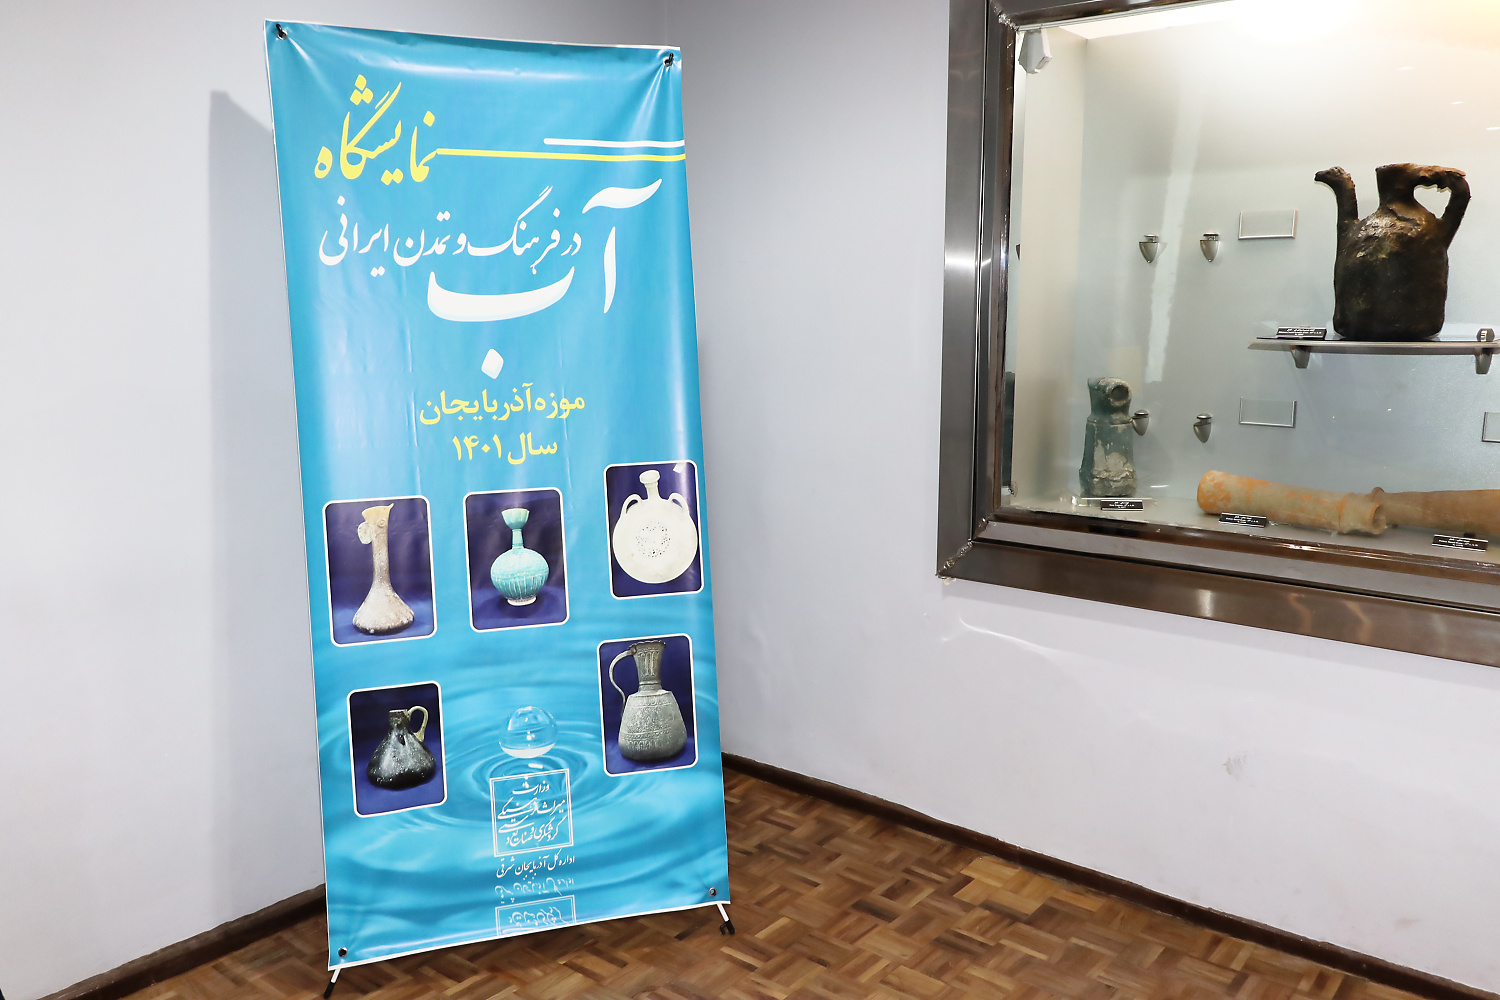 نمایشگاه آب در فرهنگ و تمدن ایرانی تبریز